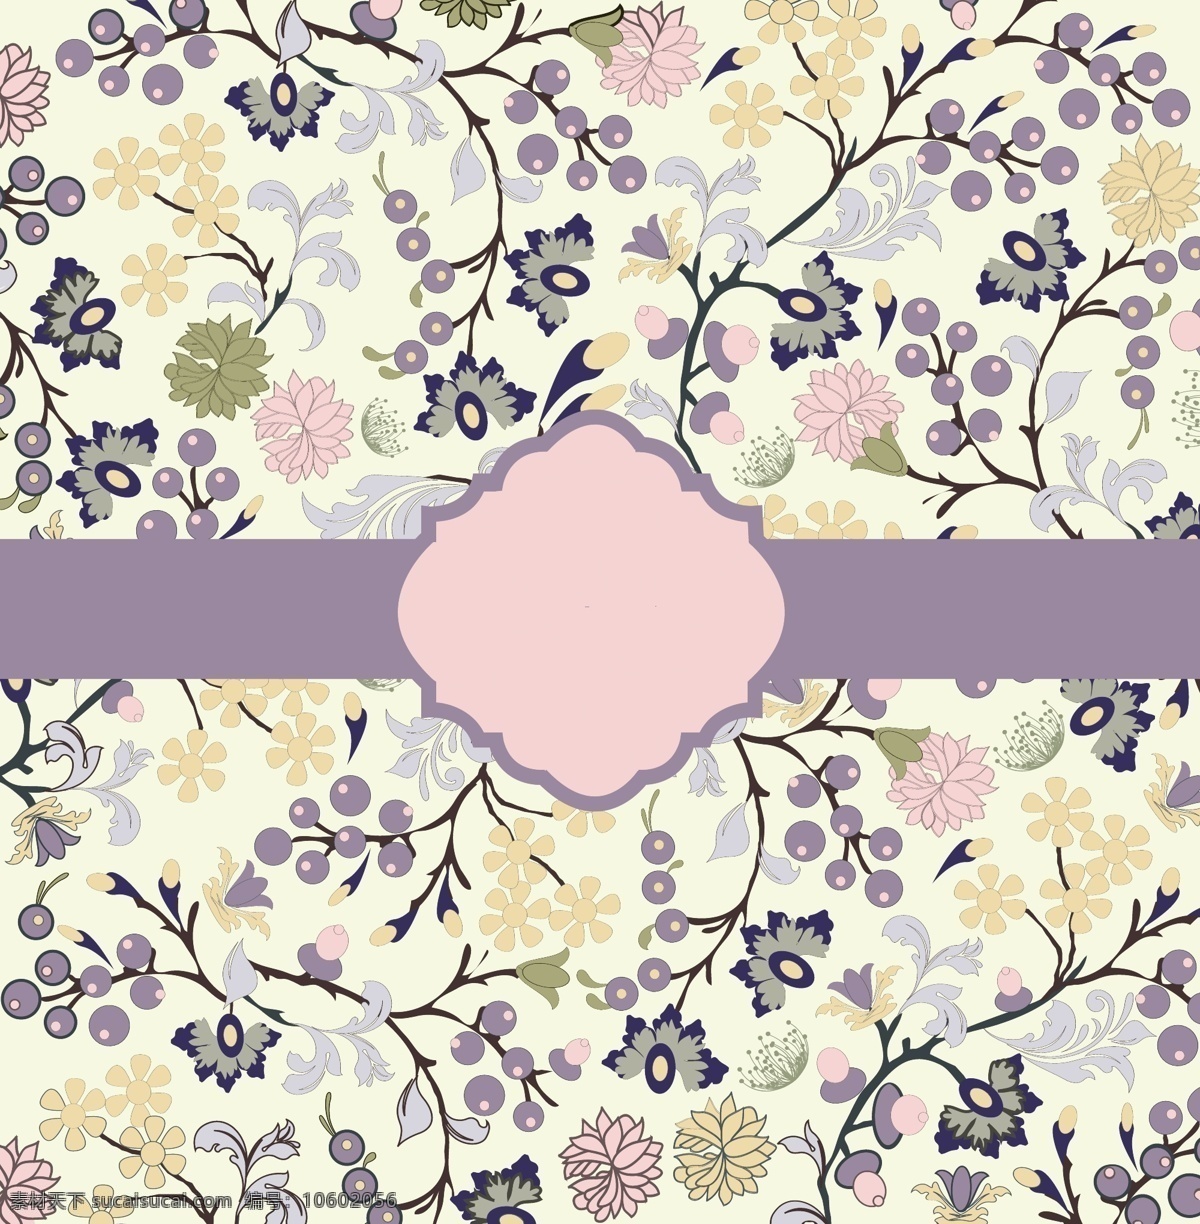 手绘插画包装 手绘 插画 包装 花朵 元素 浪漫 紫色 粉色 包装设计